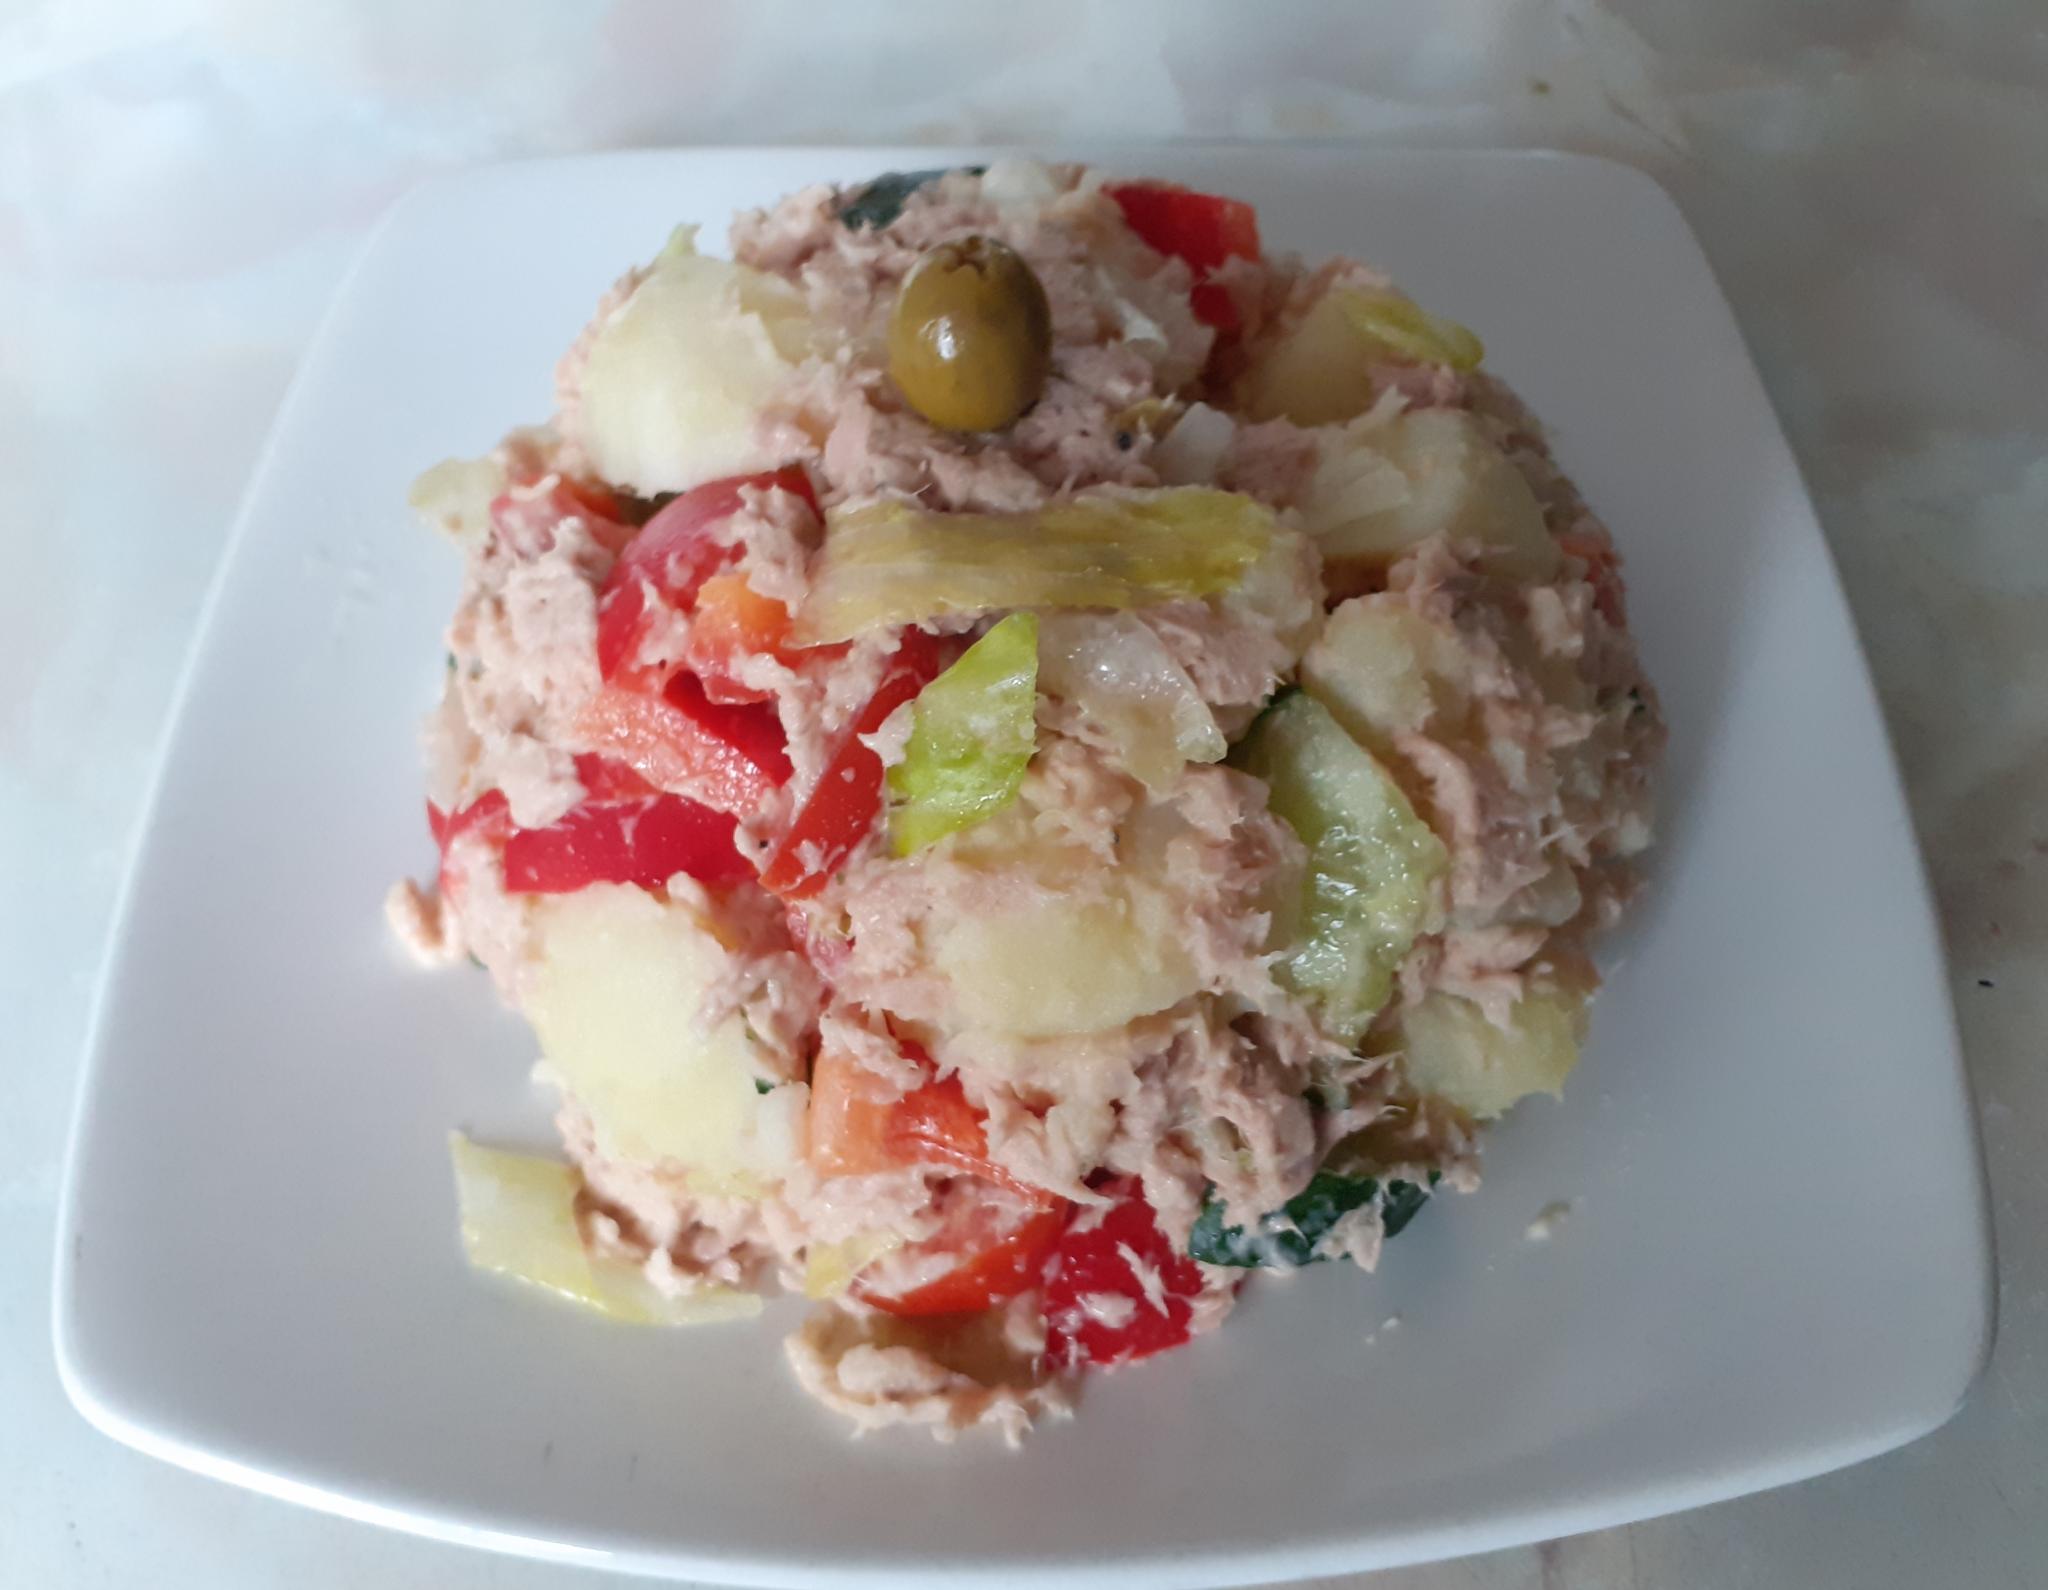 Chittys healthy en salad mixta ala Ruski-20200703_144221-jpg